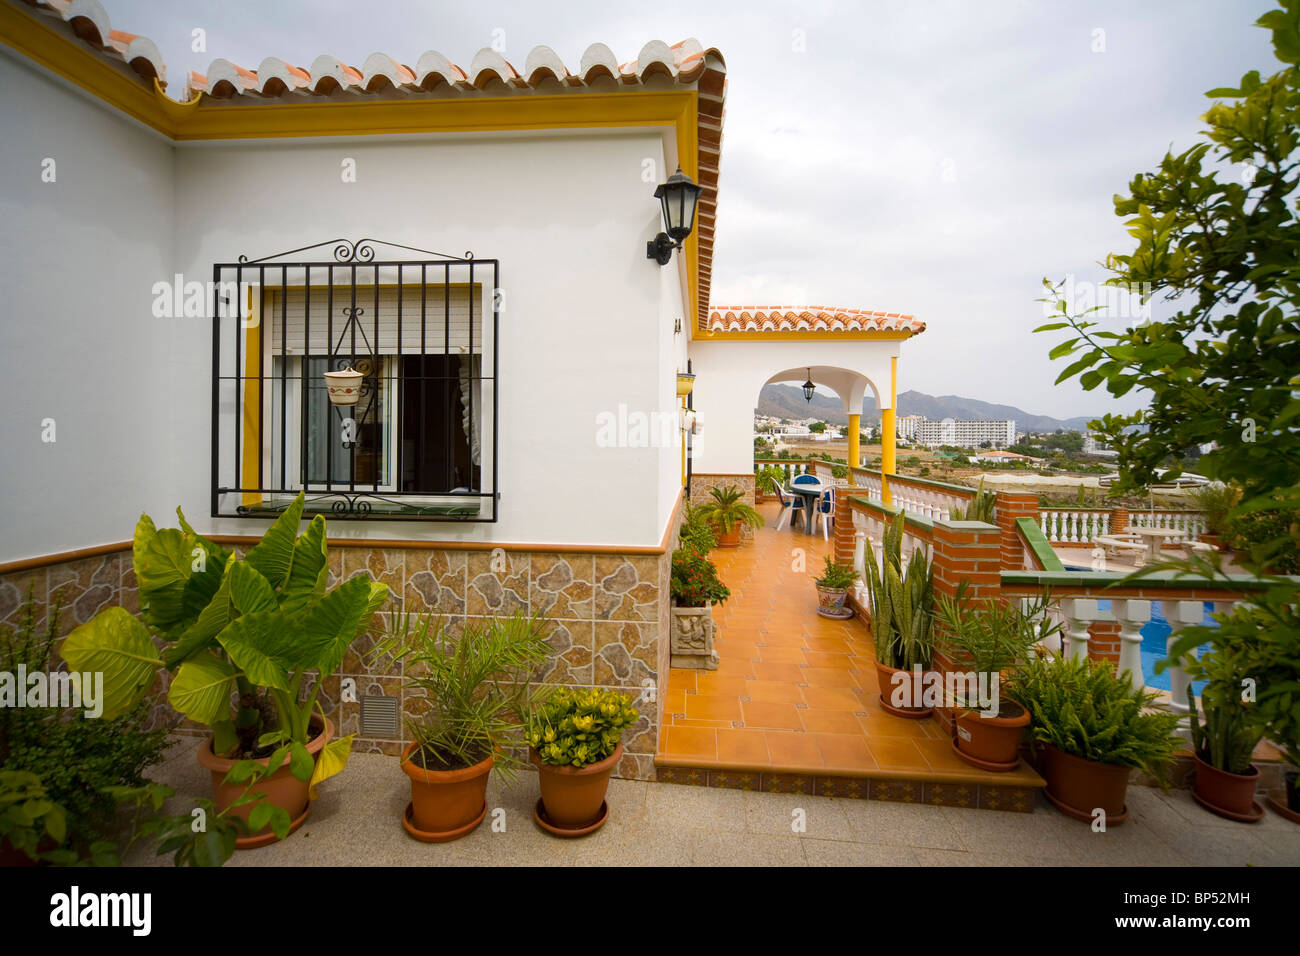 Casa vacanze villa terrazza con piscina. Immagine presa nel sud della Spagna. Foto Stock